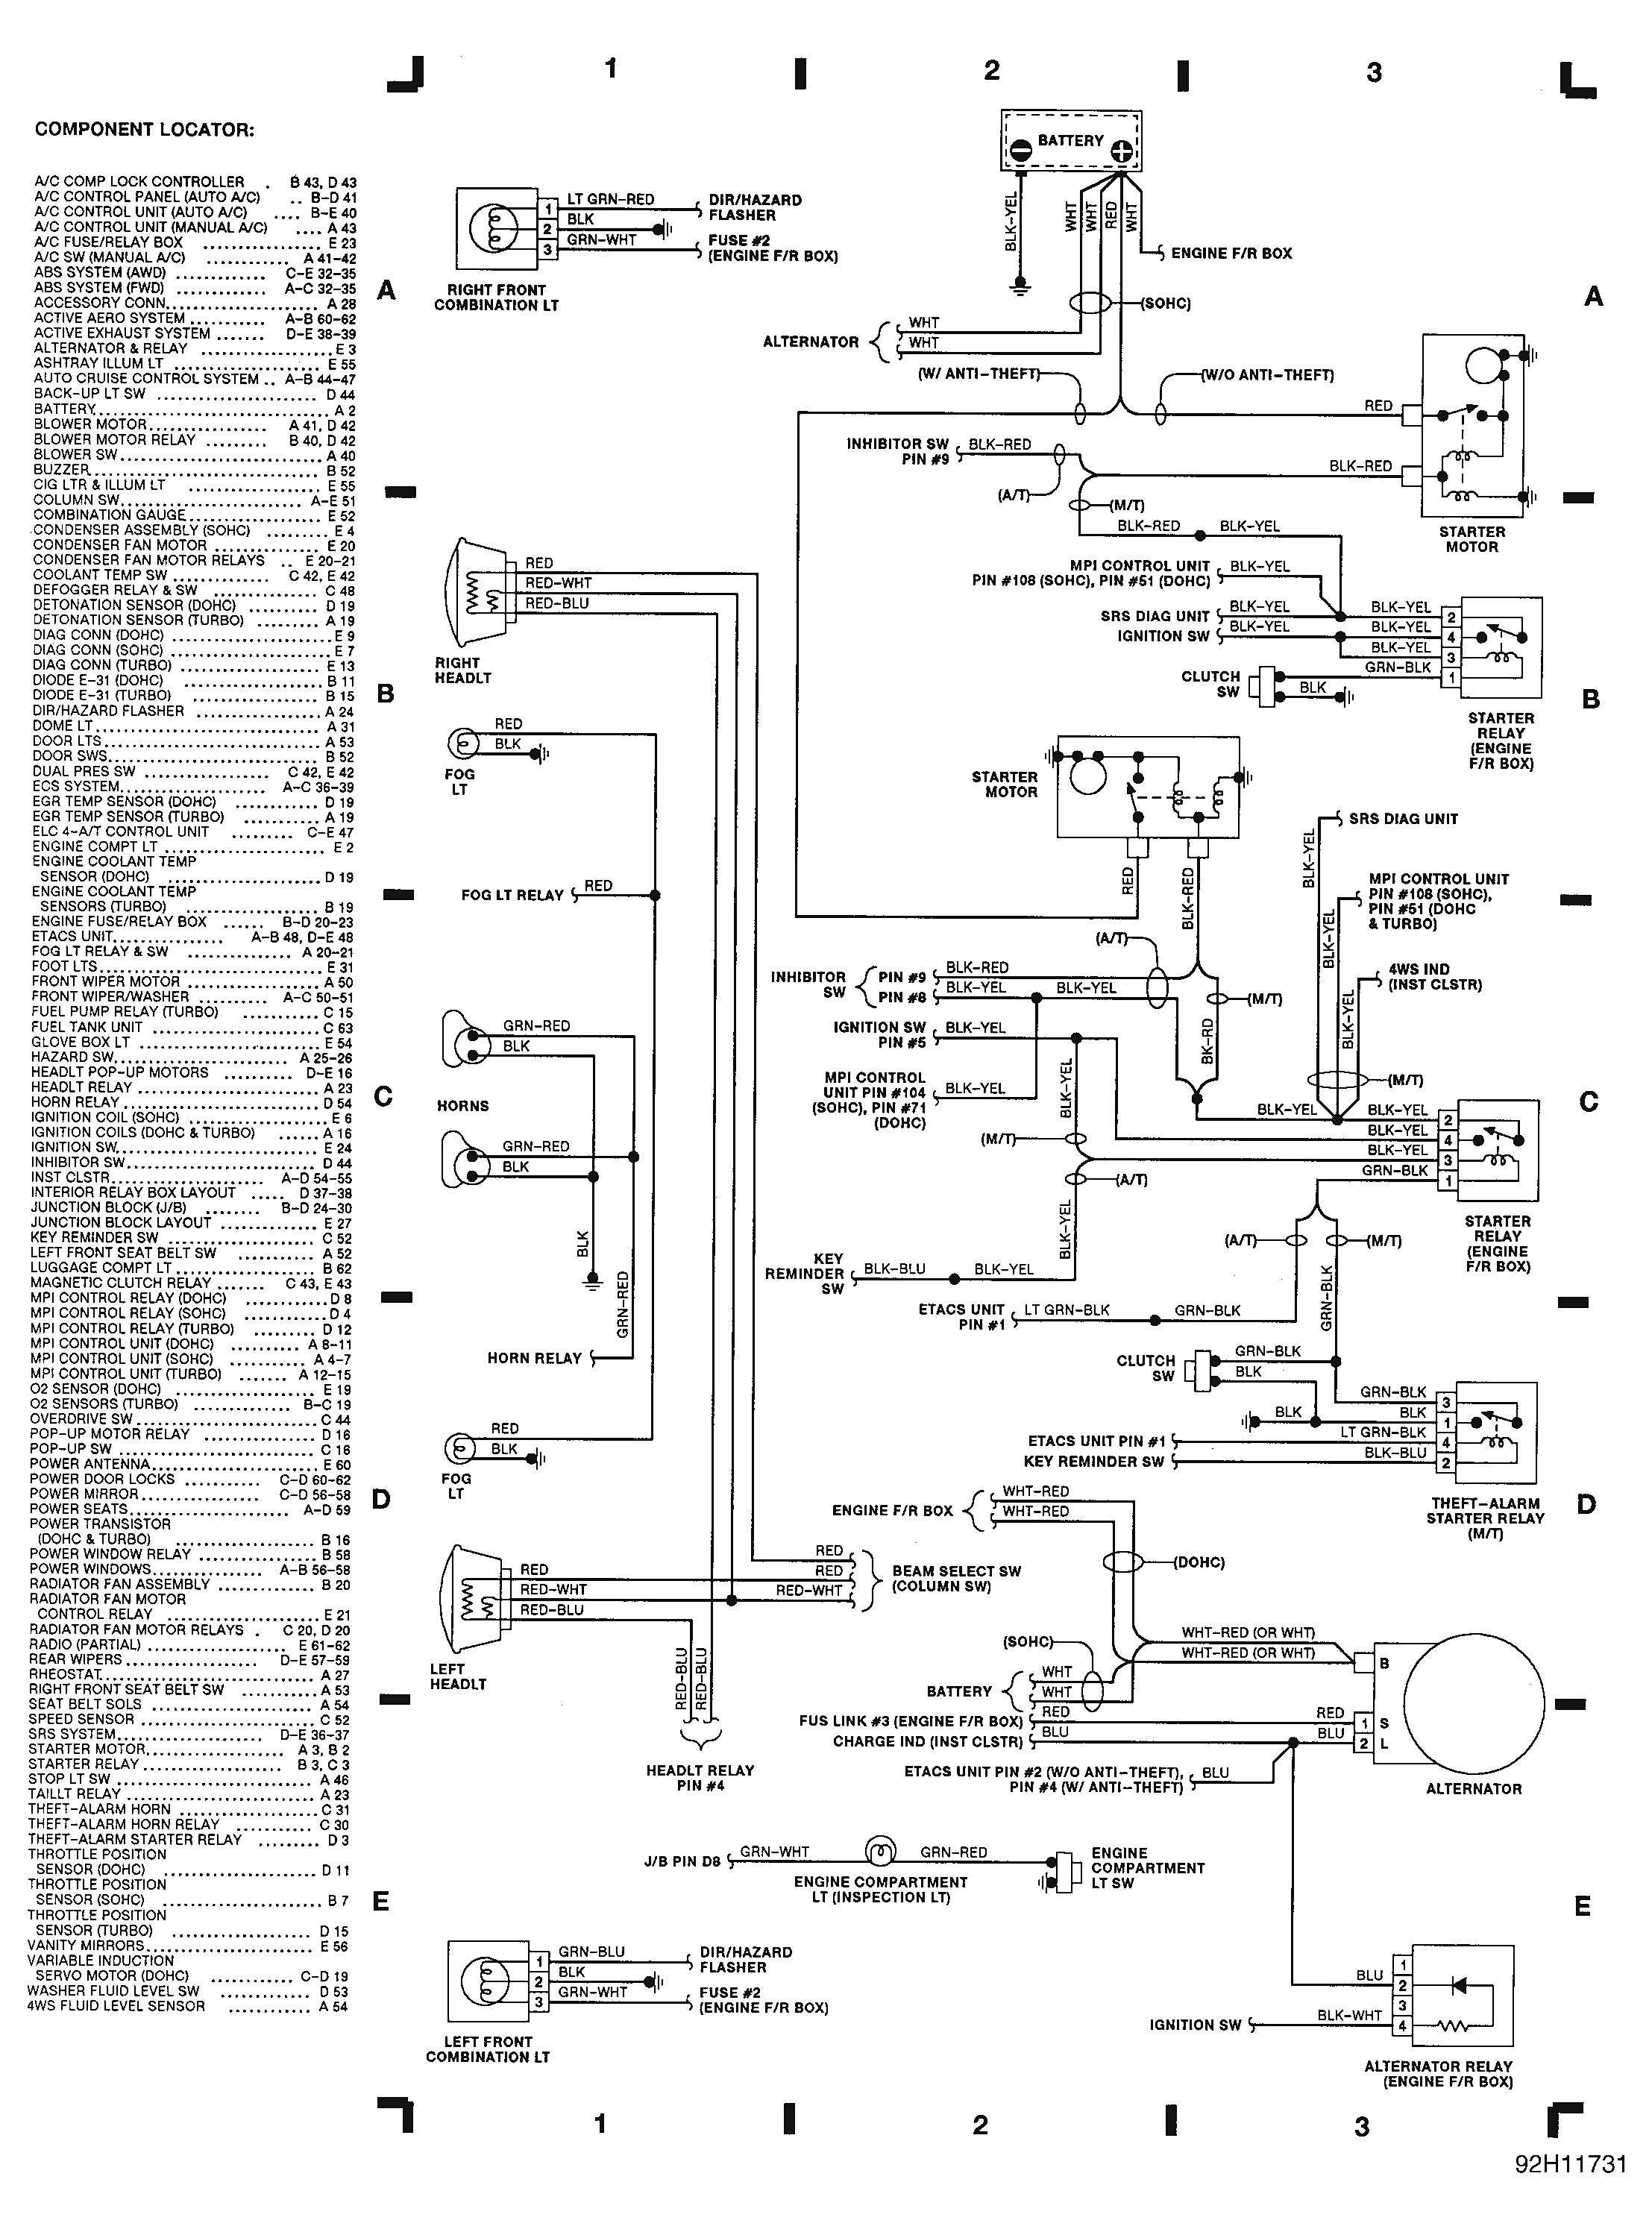 Mitsubishi Engine Diagram Mitsubishi 3000 Engine Diagram Circuit Connection Diagram • Of Mitsubishi Engine Diagram